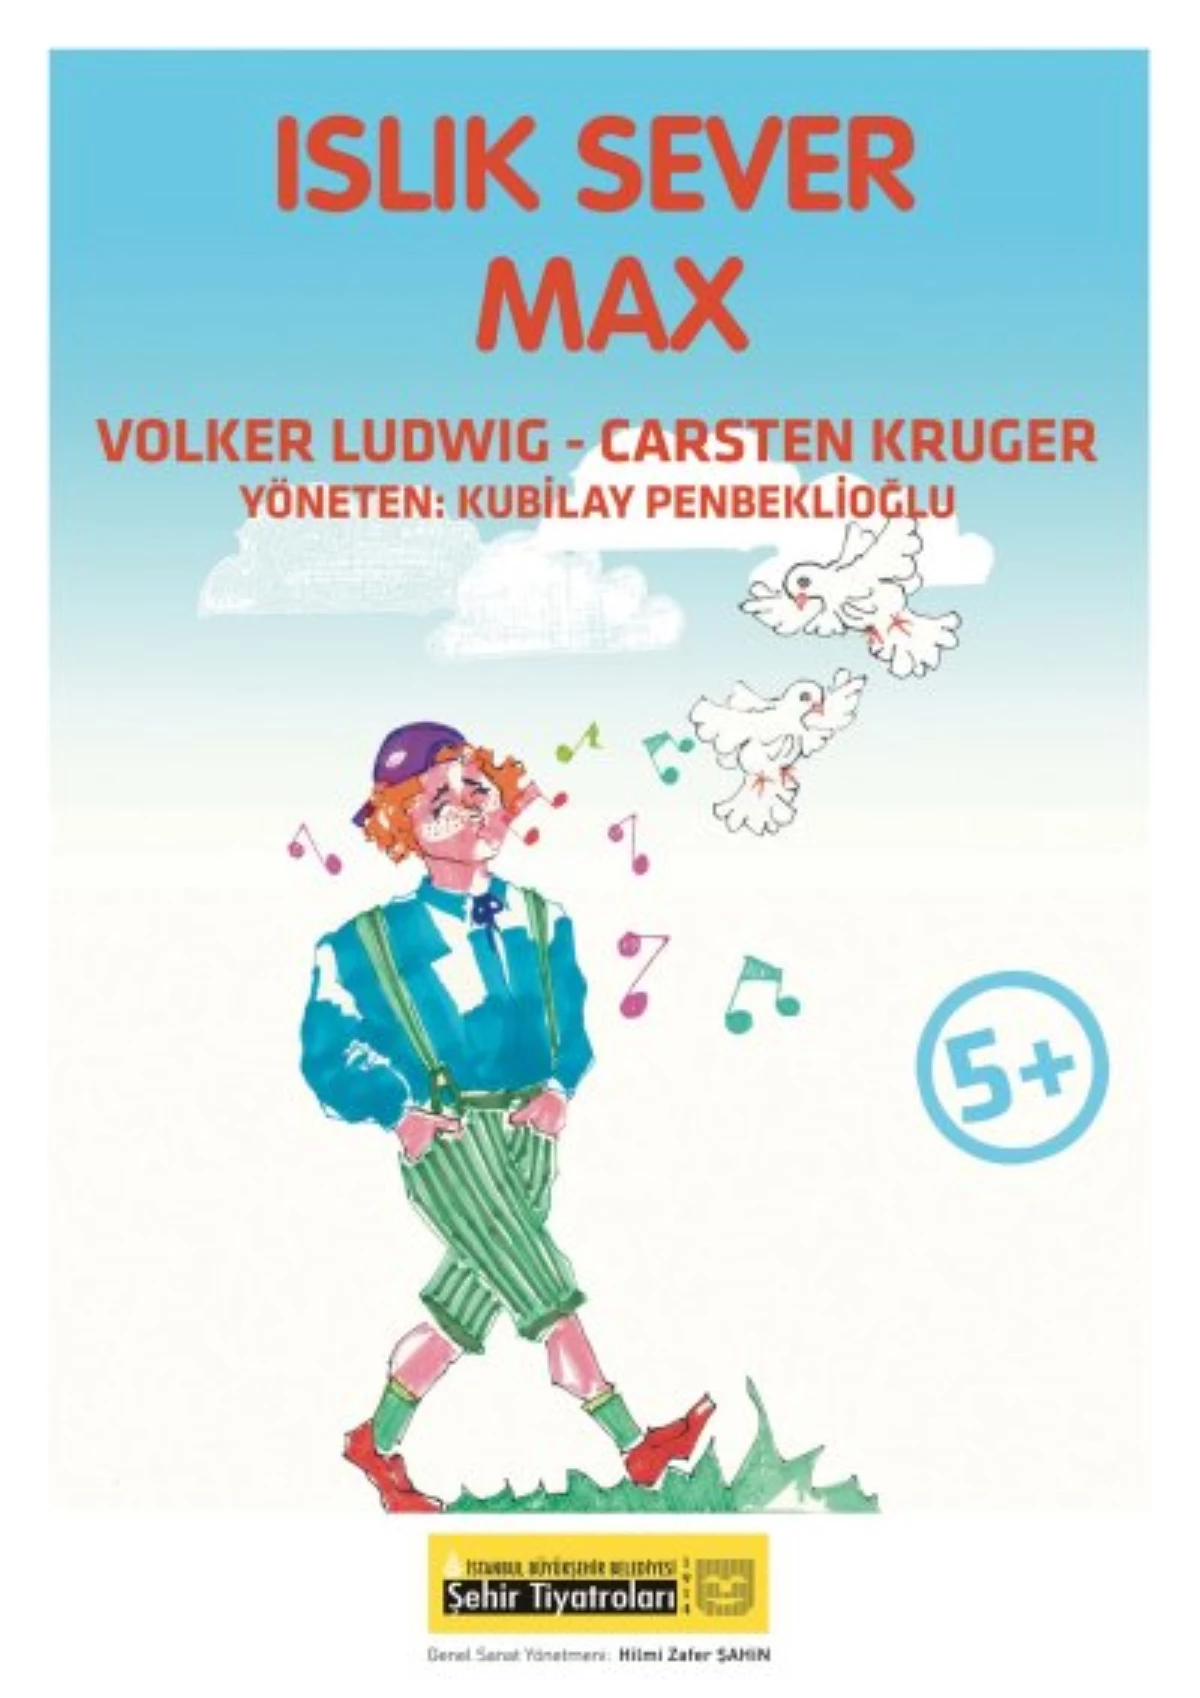 İBB Şehir Tiyatroları\'nda Yeni Çocuk Oyunu: "Islık Sever Max"